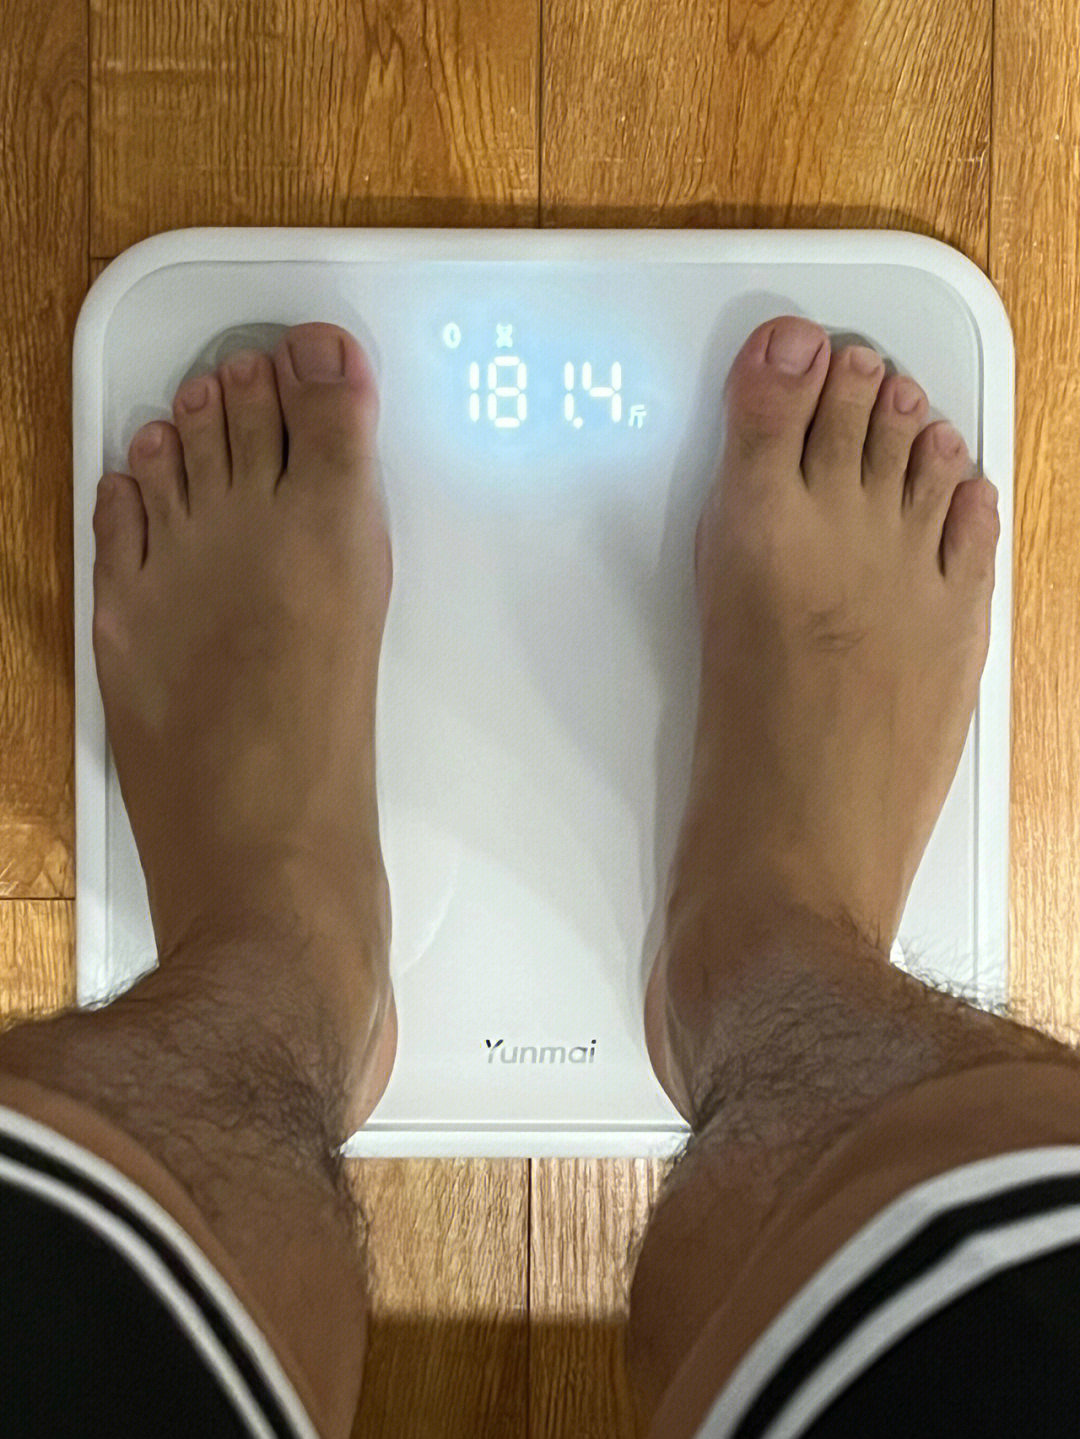 靠这个体脂秤瘦了十斤日常控制体重必须要有一个体脂秤在家才行每三天